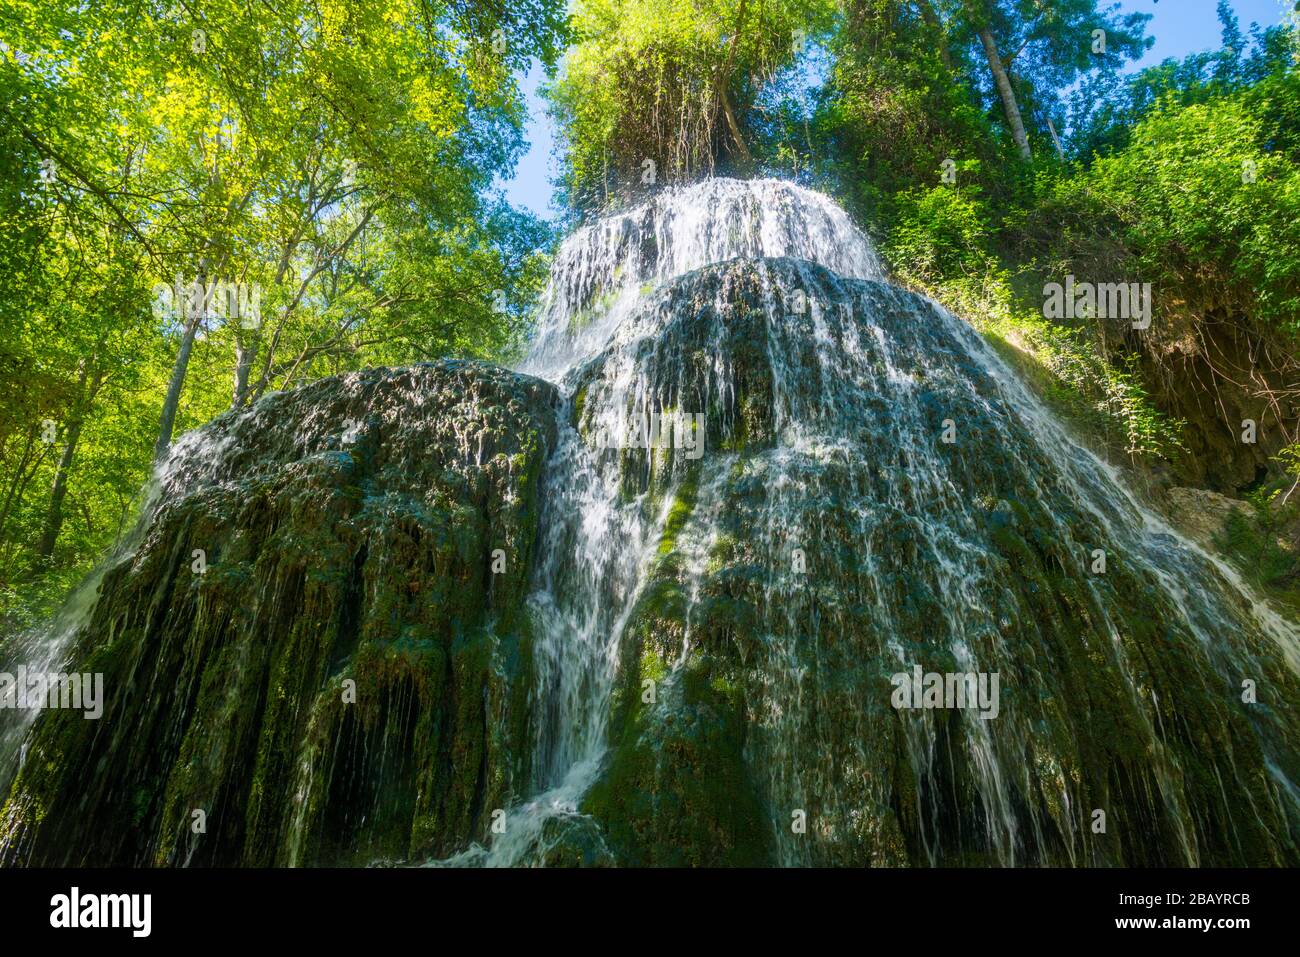 Trinidad cascade. Monasterio de Piedra Natural Park, Nuevalos, Zaragoza province, Aragon, Spain. Stock Photo